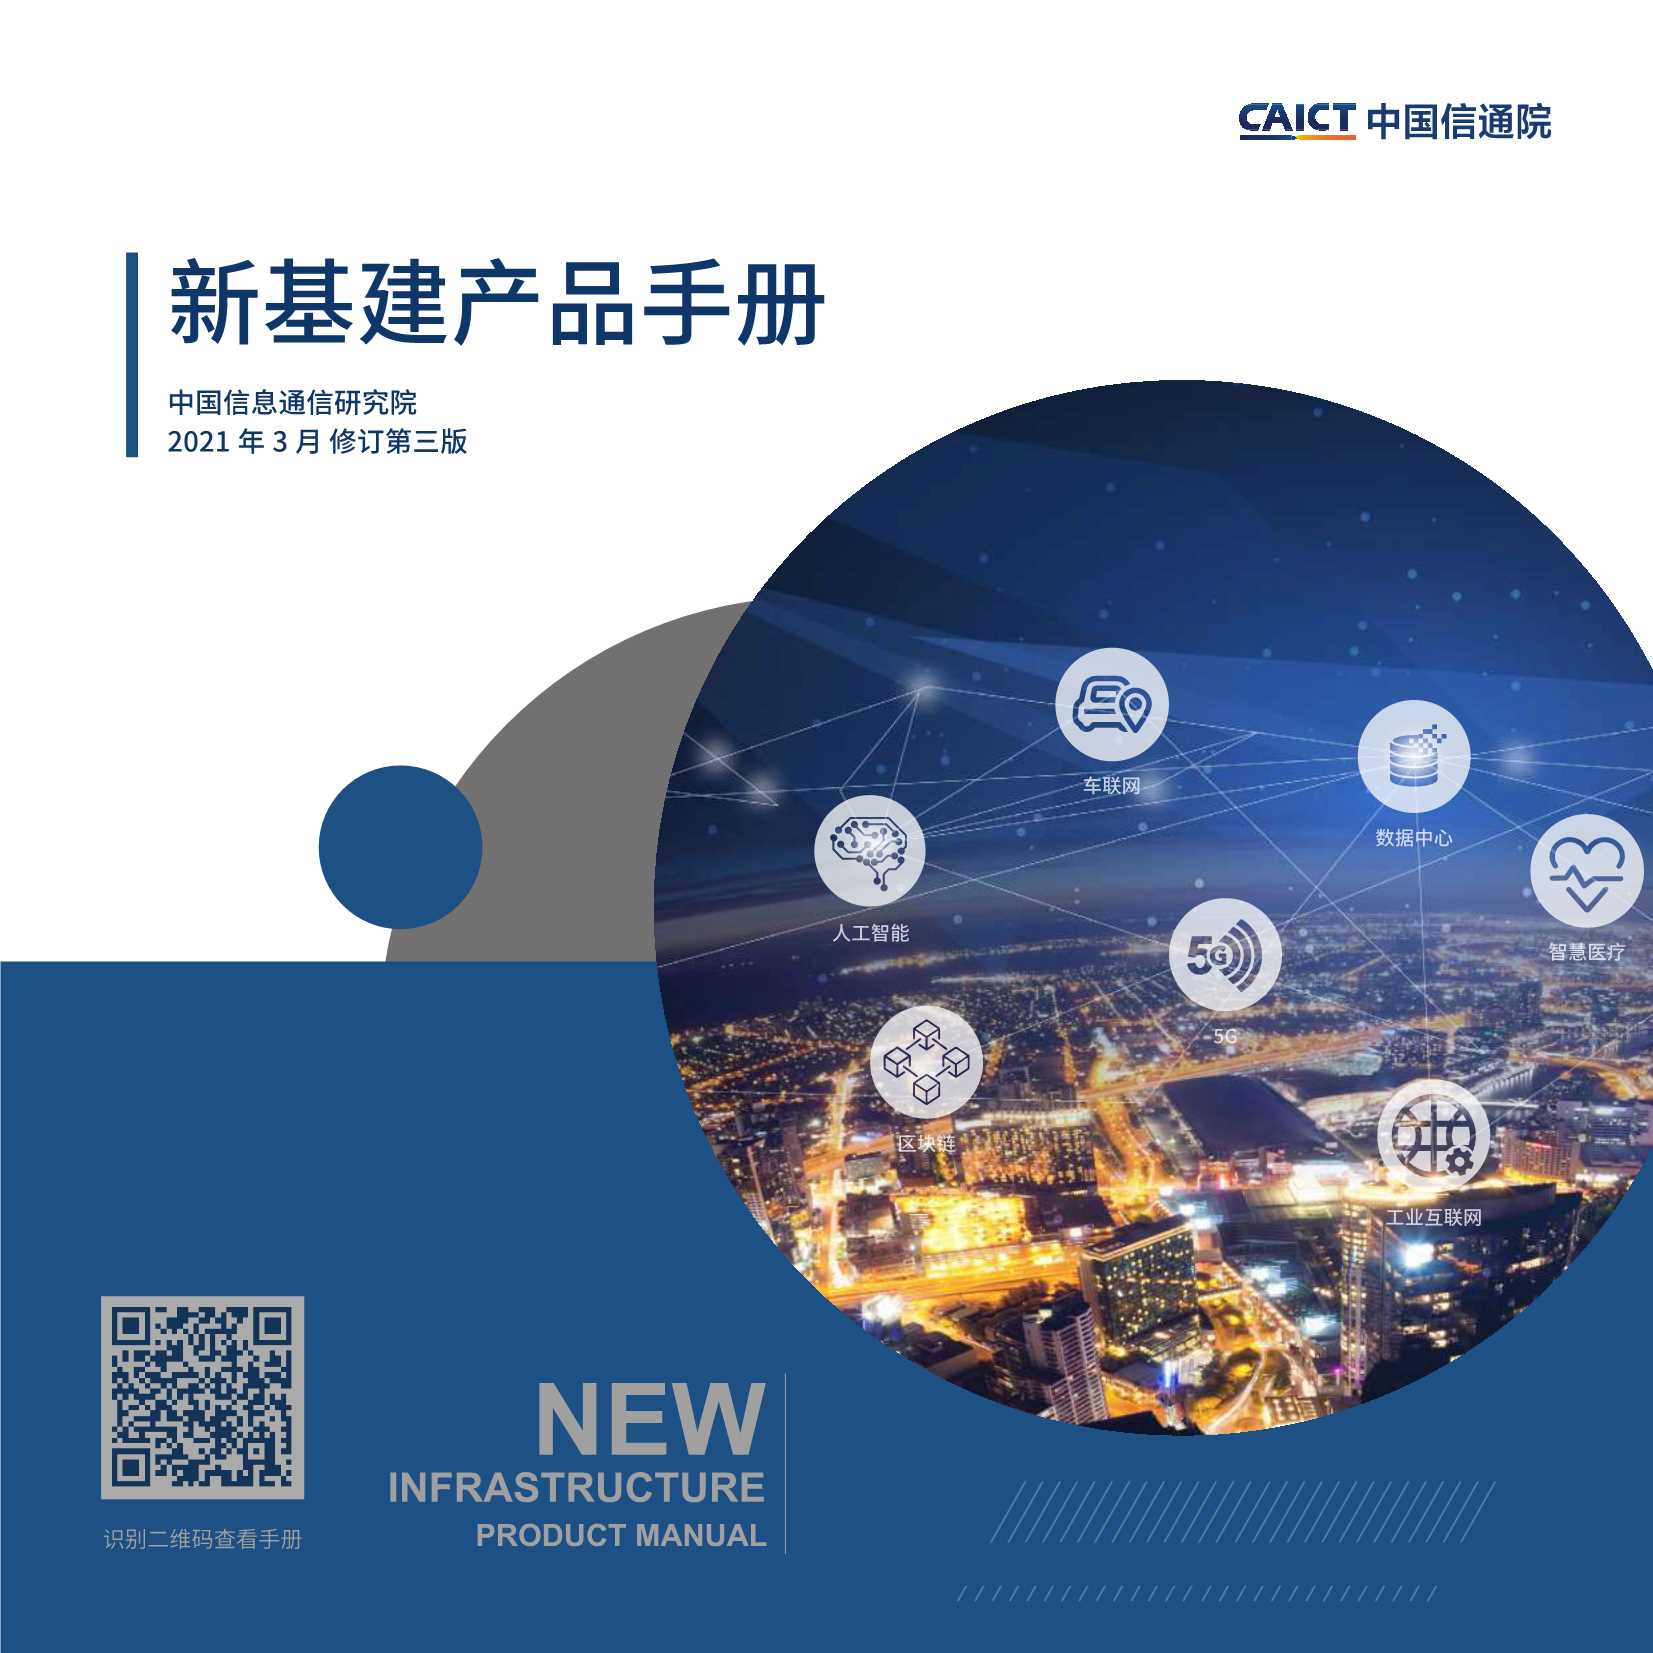 中国信通院-新基建产品手册第三版-2021.03-72页